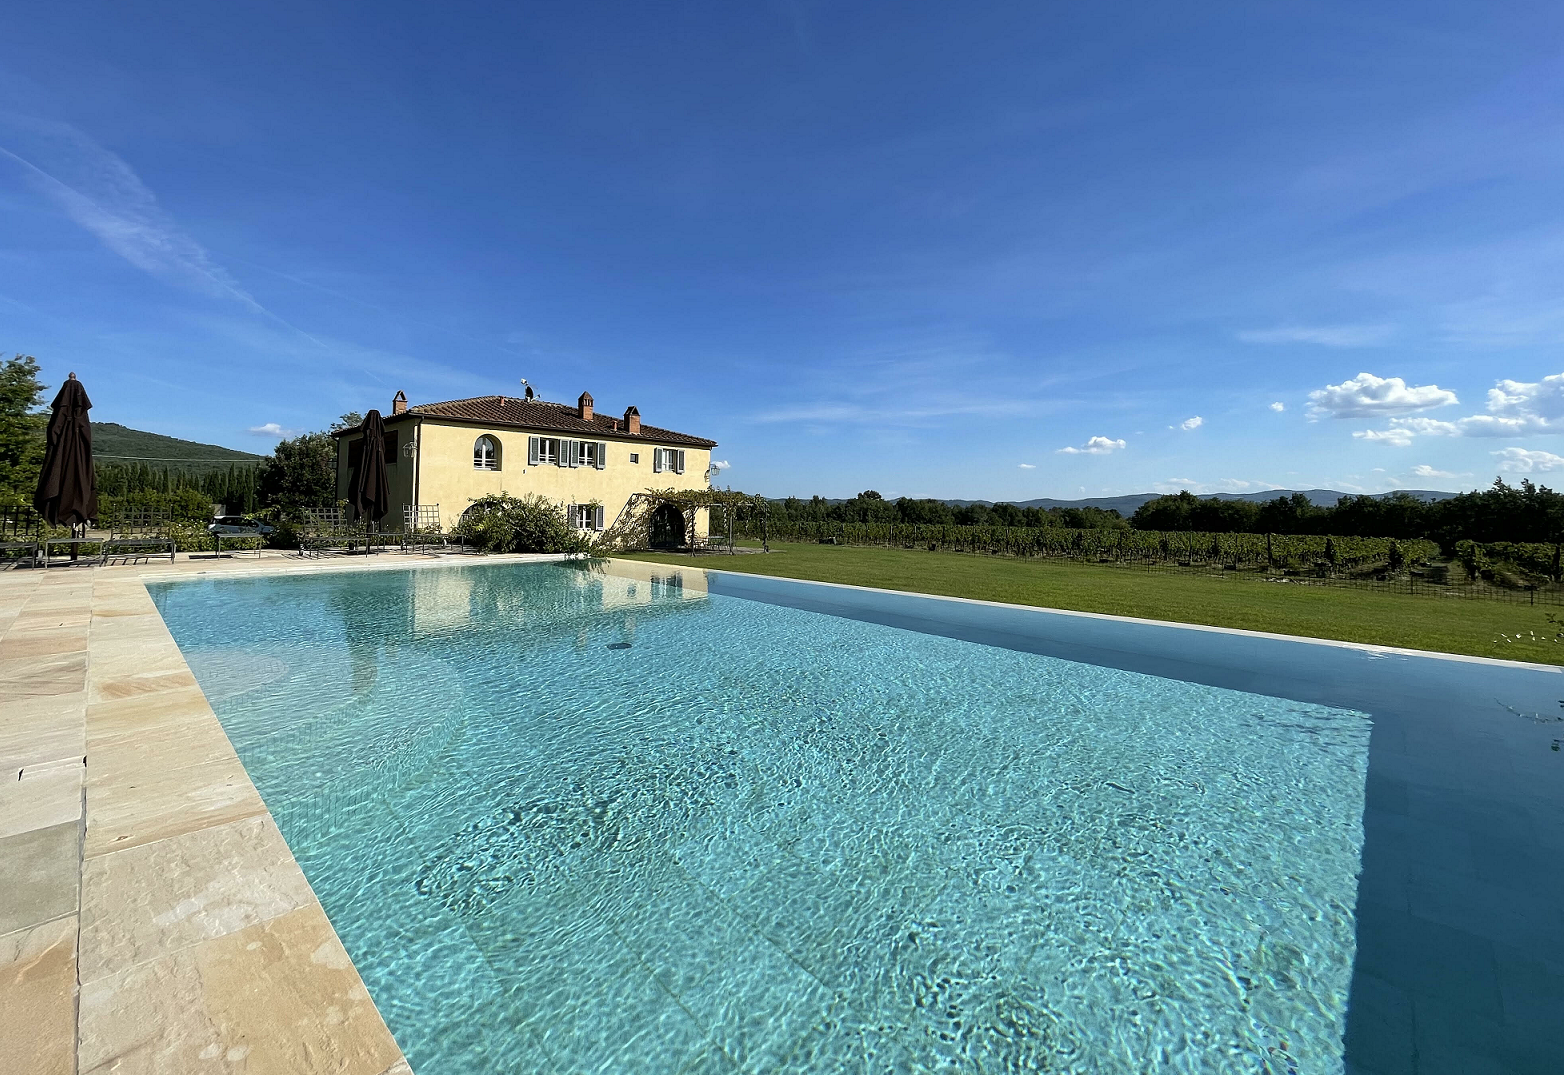 4 bedroom Villa in Tuscany - CASALIO VILLAS